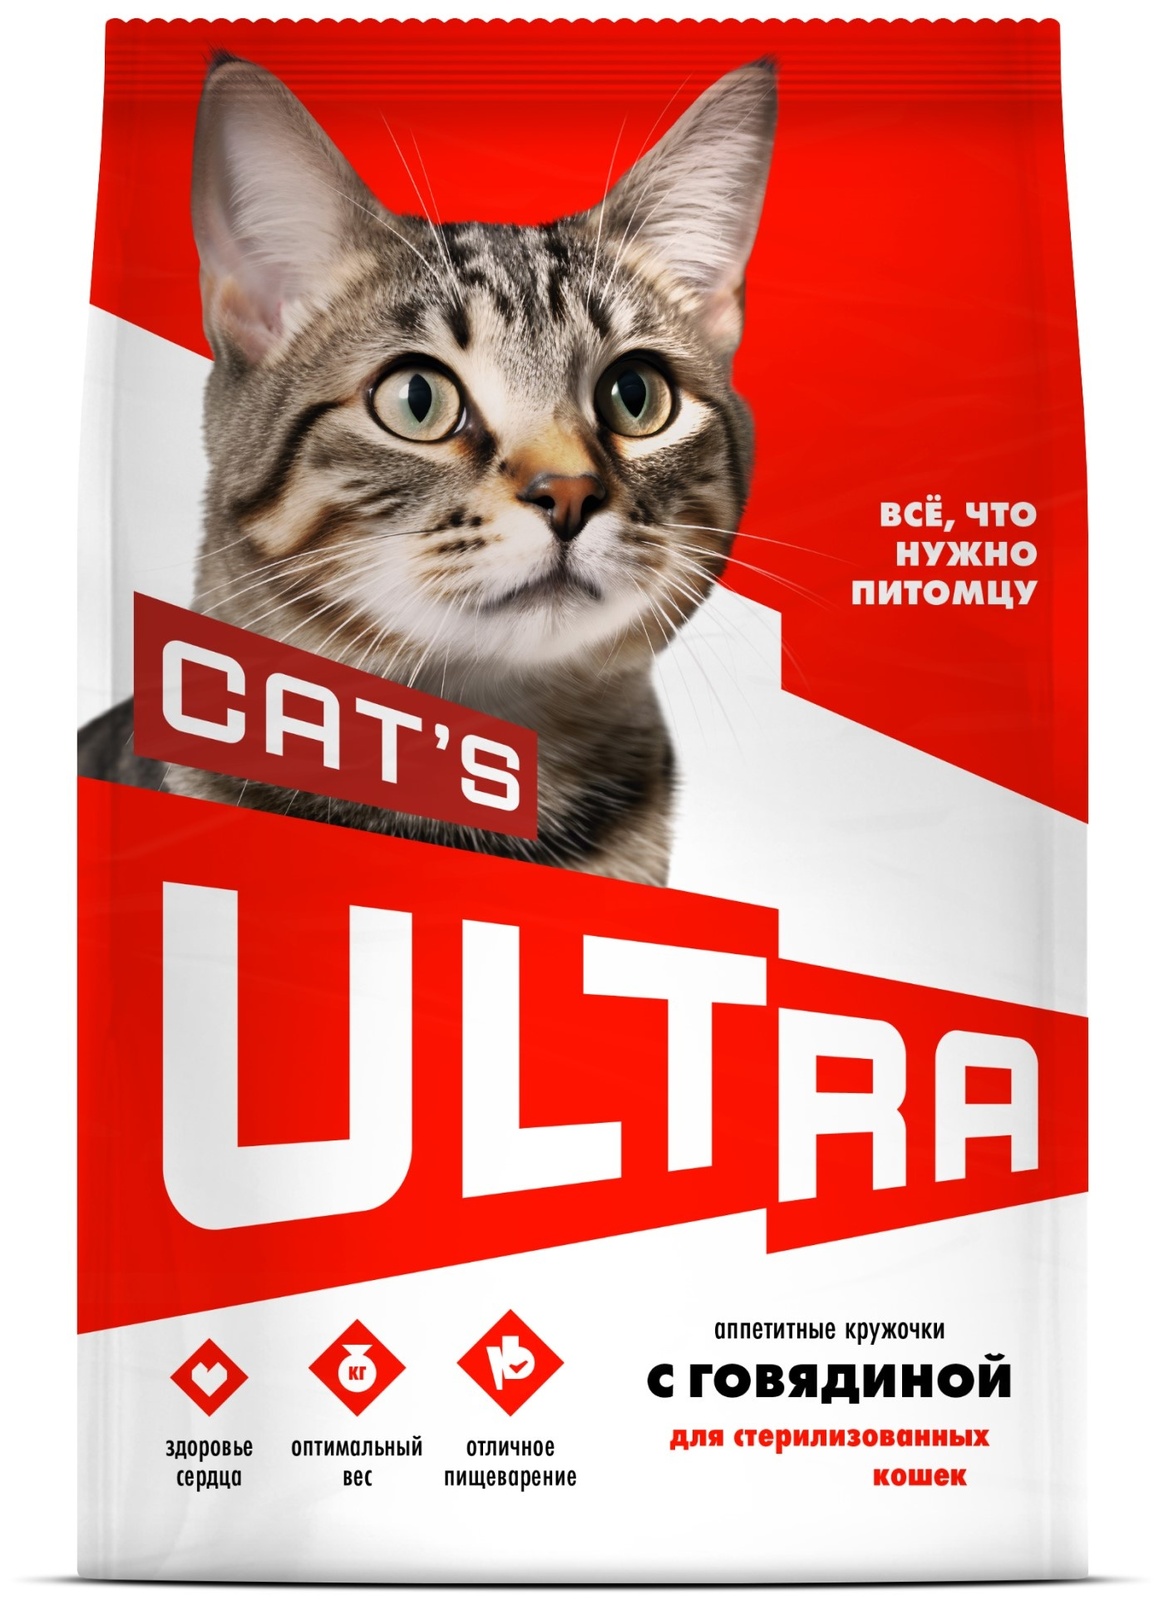 ULTRA ULTRA аппетитные кружочки с говядиной для стерилизованных кошек (600 г) ultra ultra аппетитные кружочки с говядиной для взрослых собак всех пород 600 г